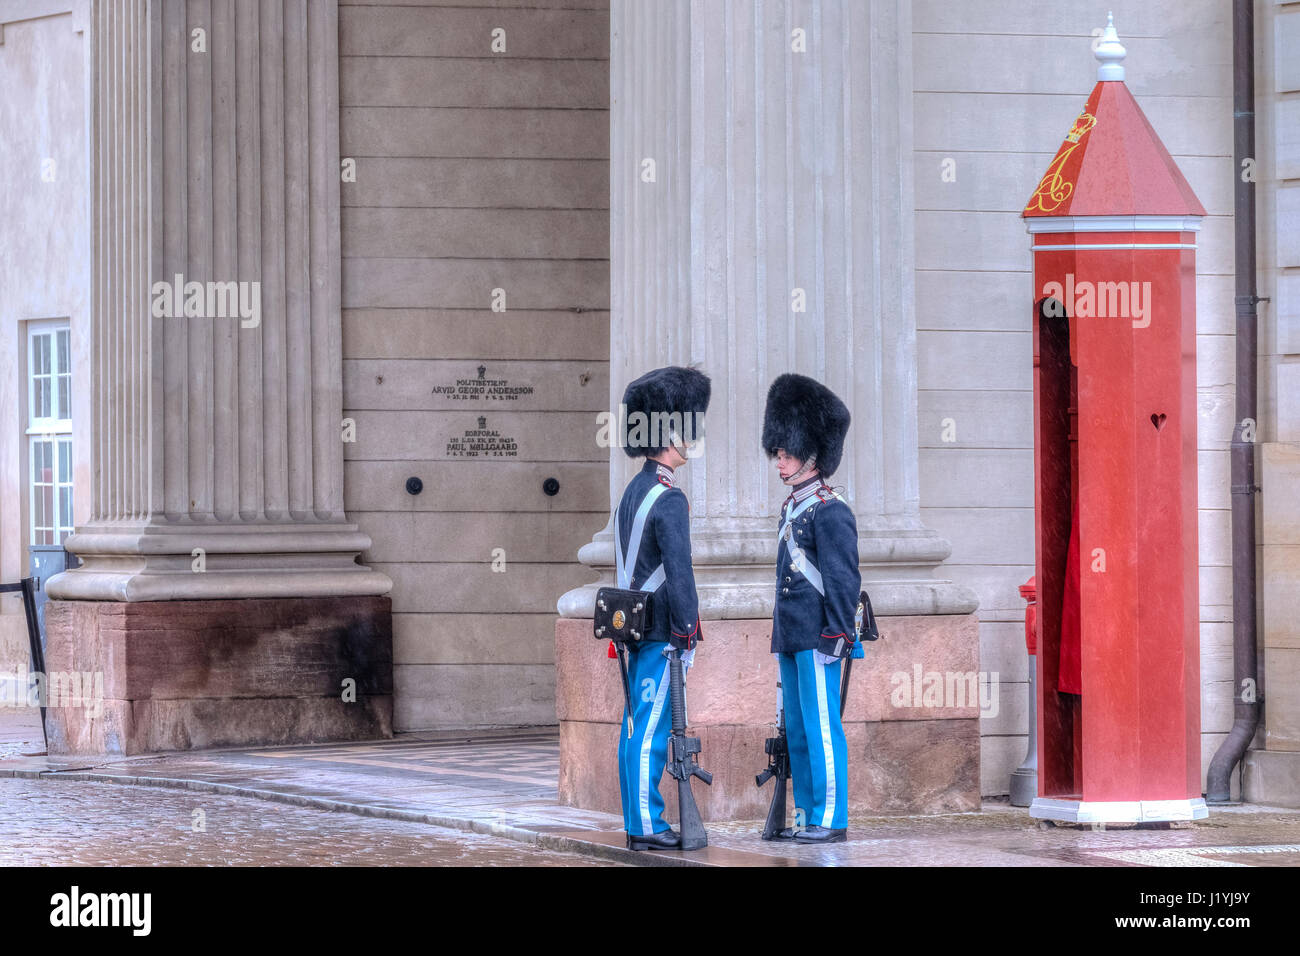 Gardes à Amalienborg Palace à Copenhague, Danemark, Scandinavie Banque D'Images